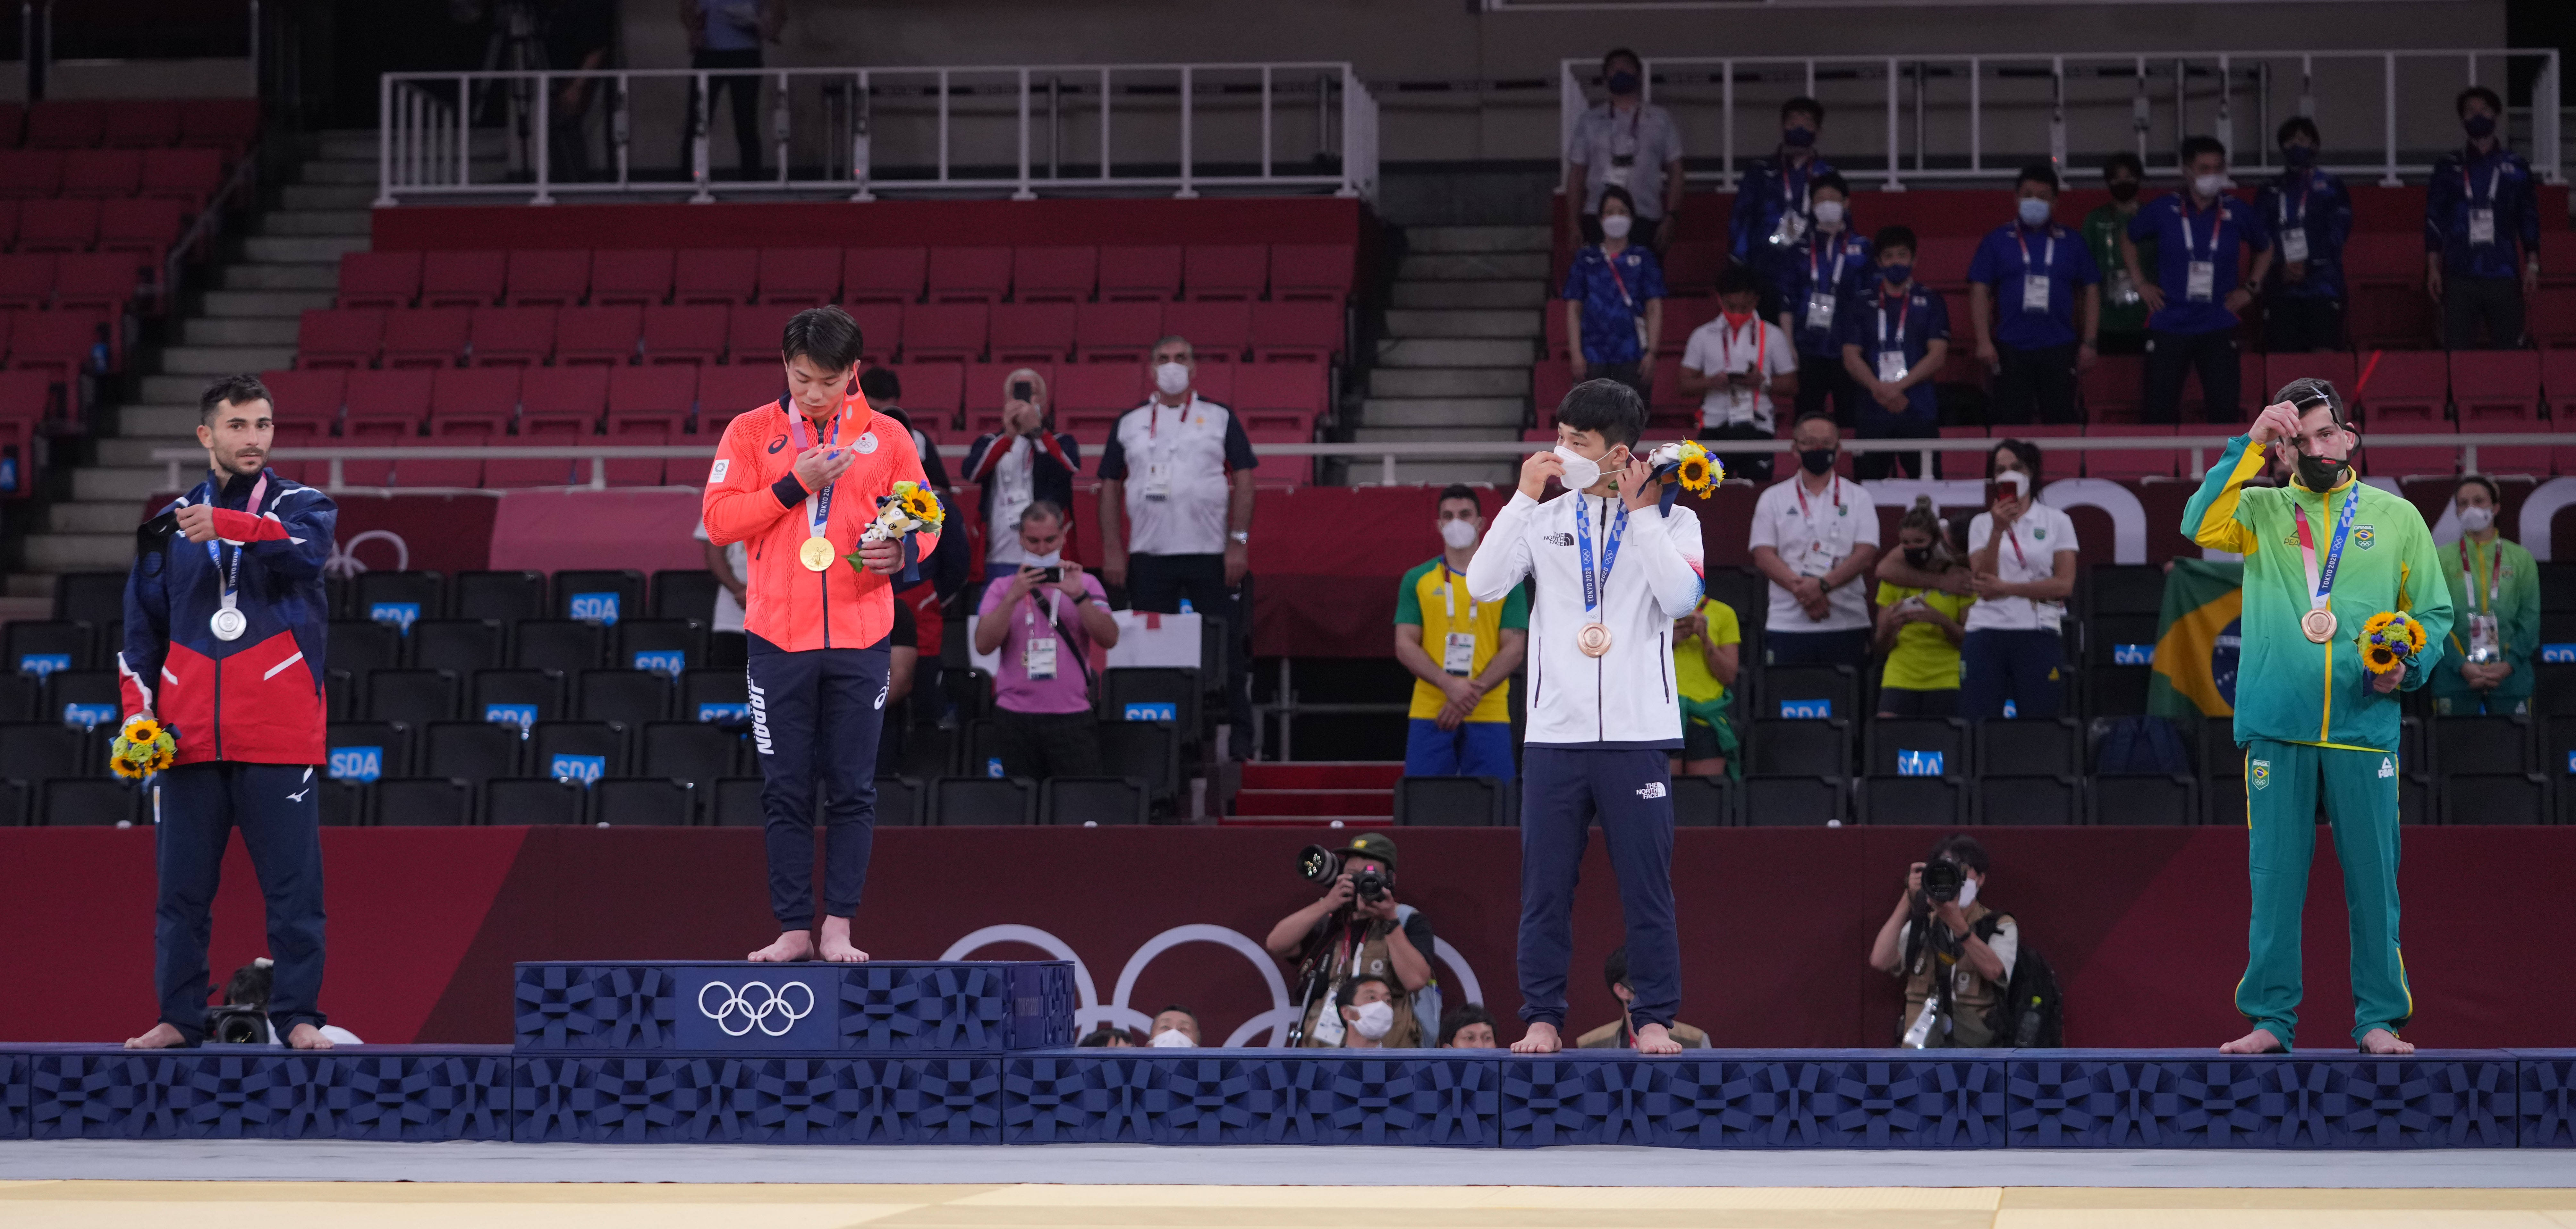 当日,在东京奥运会柔道男子66公斤级决赛中,日本选手阿部一二三战胜